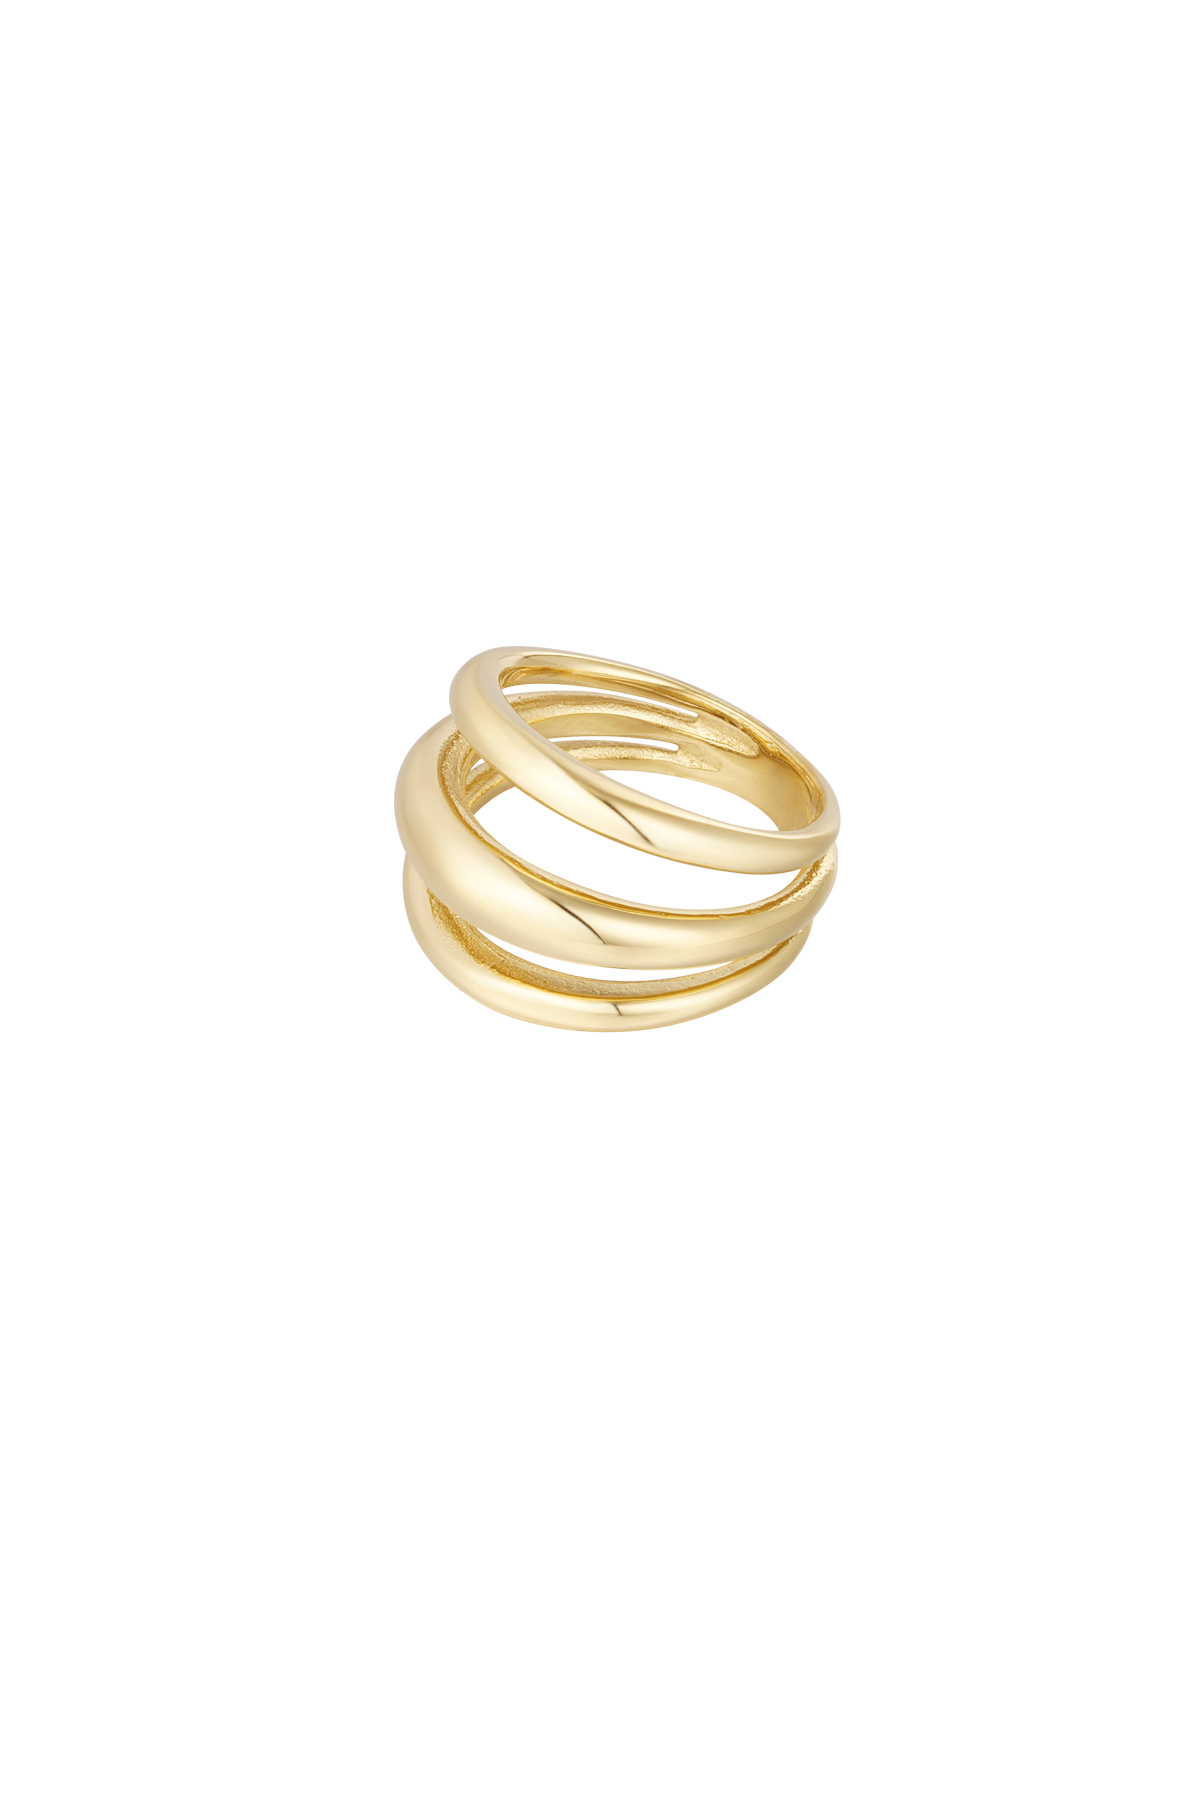 Ring drie lagen - goud h5 